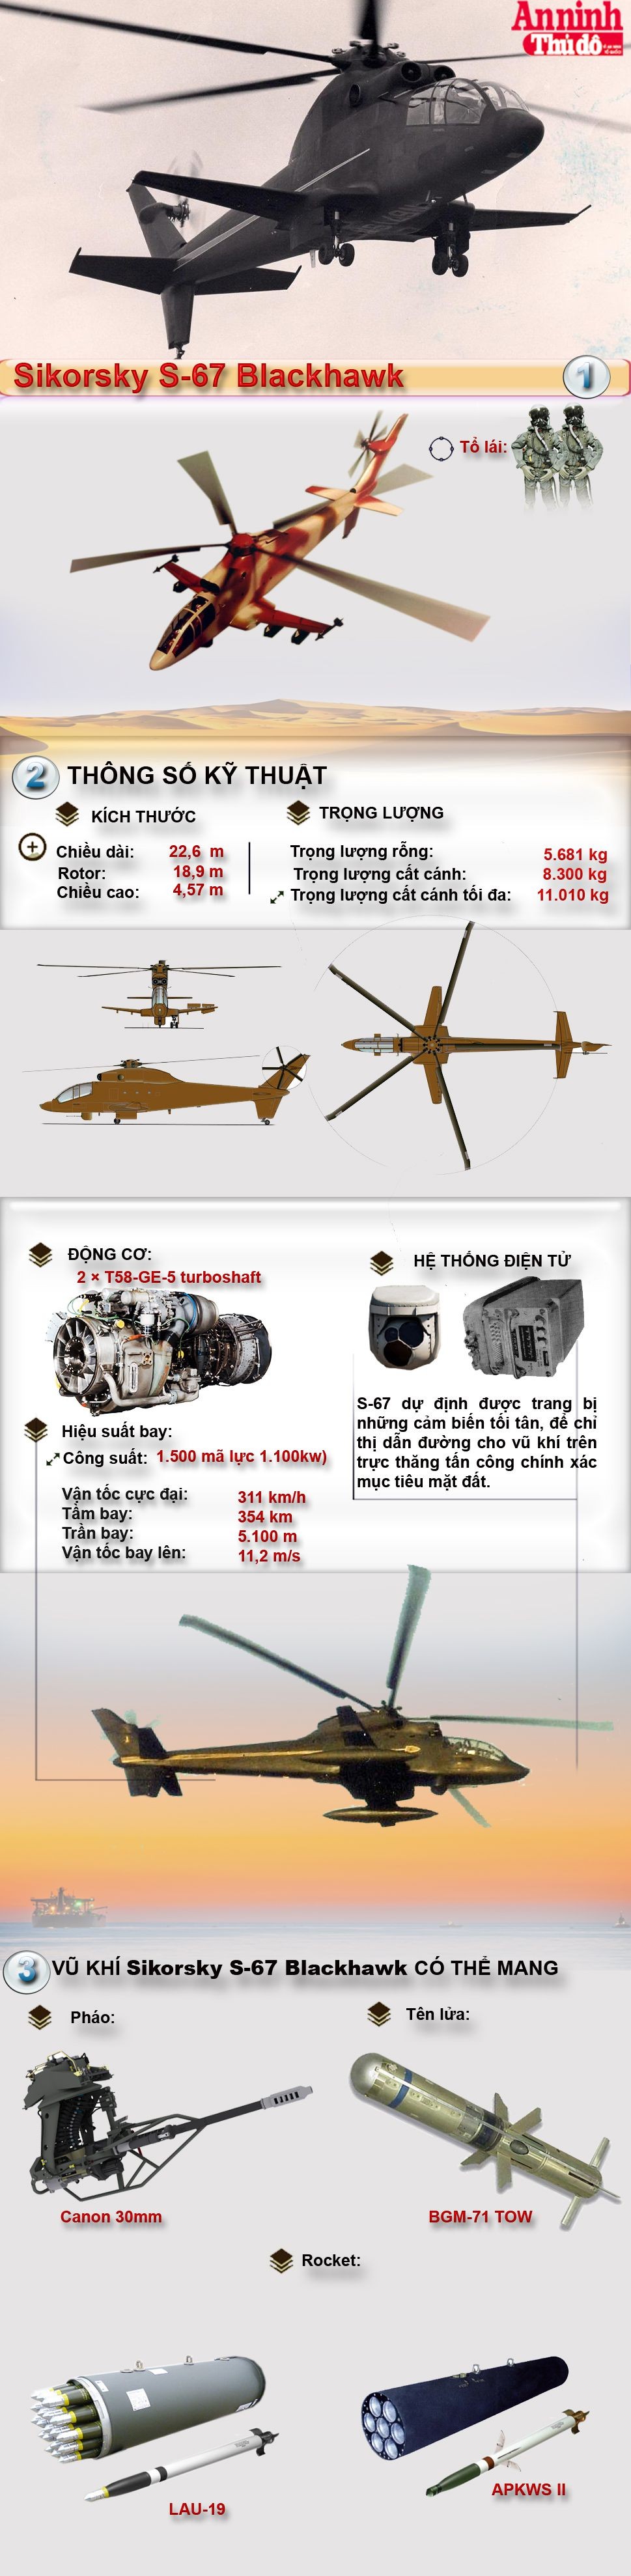 [Infographic] Sikorsky S-67 Blackhawk- trực thăng tấn công chết yểu của Mỹ ảnh 1